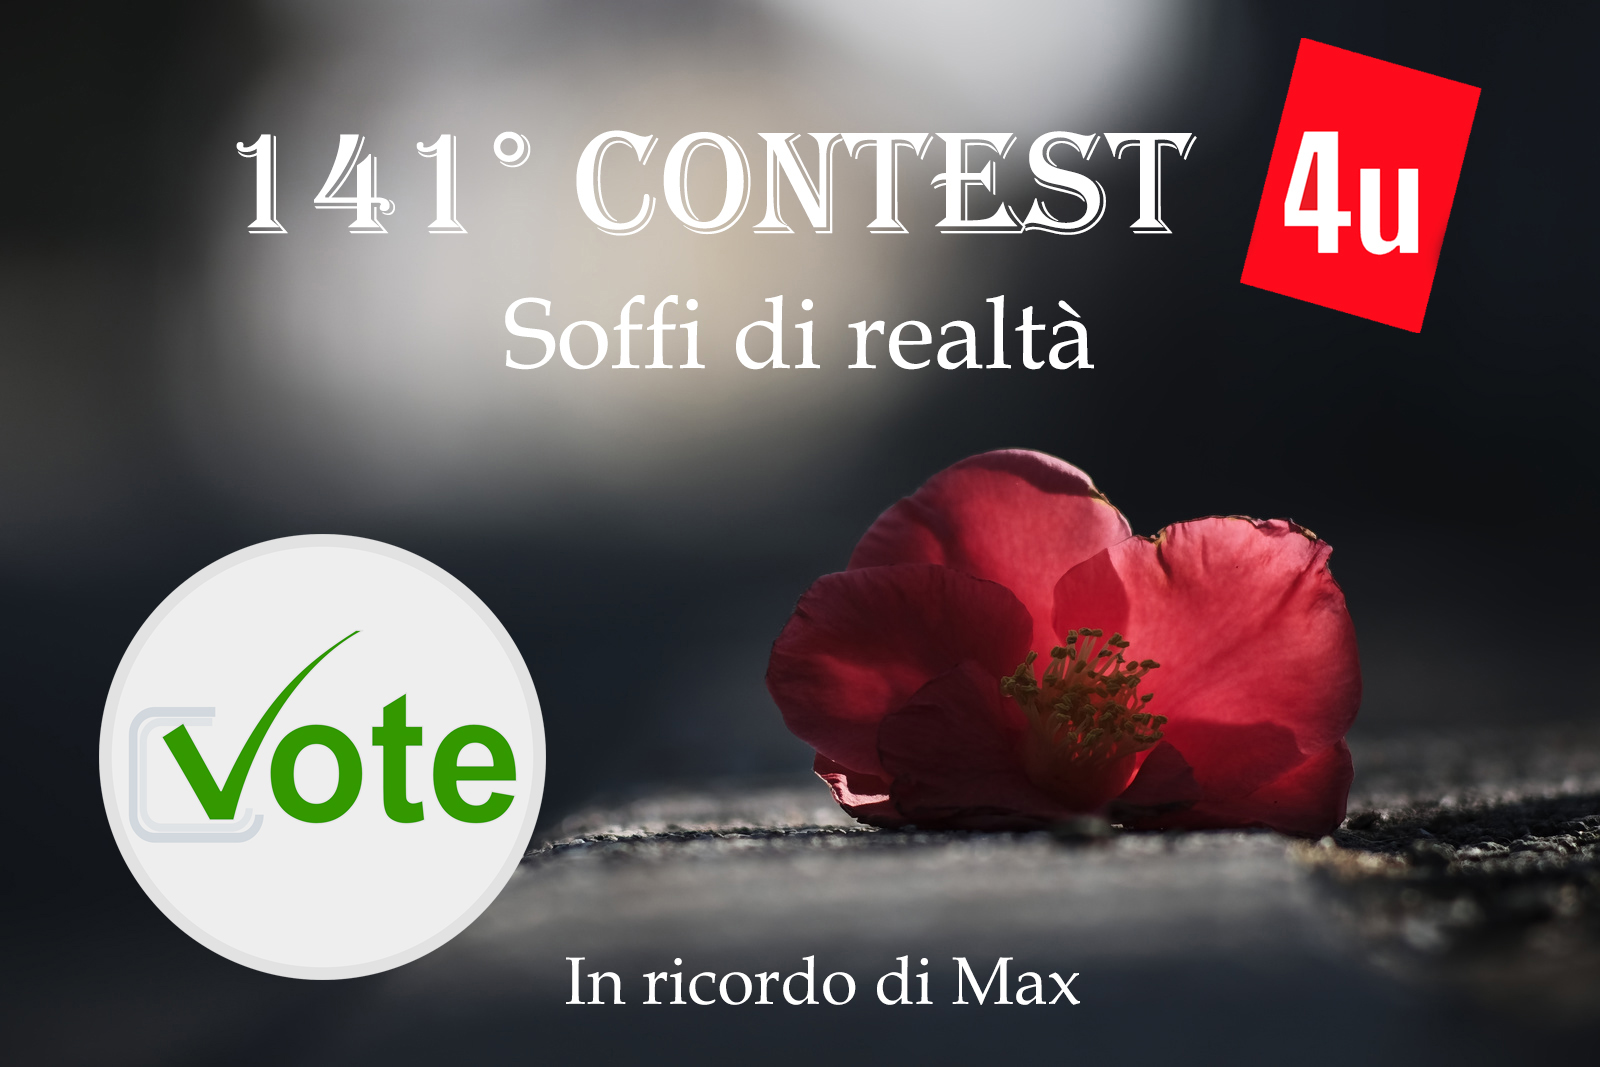 141 Contest SOFFI DI REALTA' - Votazione Aperta